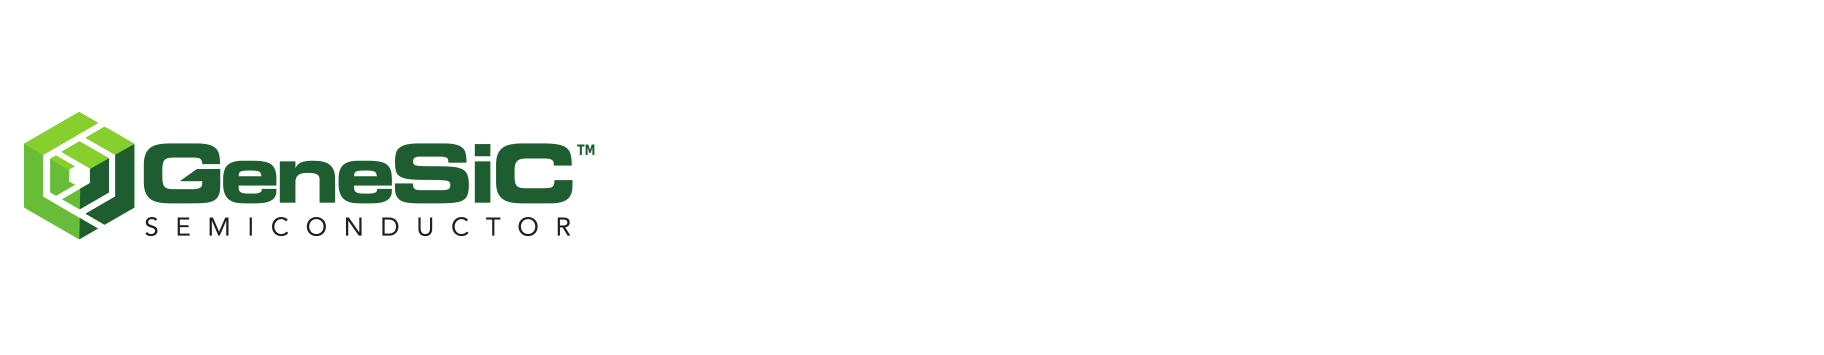 GeneSiC Logo